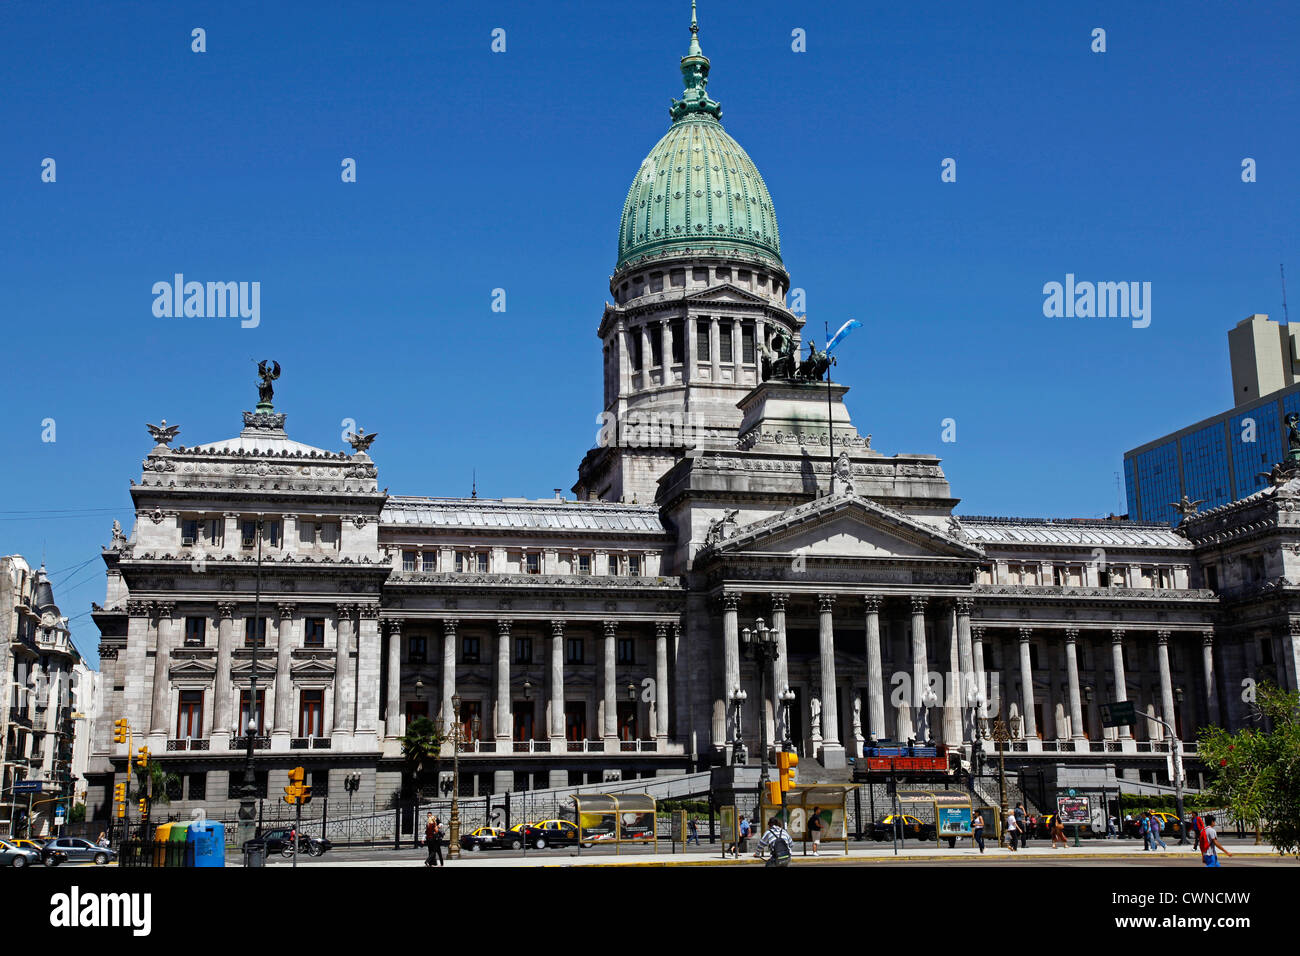 Congreso Nacional, the National Congress, Buenos Aires, Argentina. Stock Photo